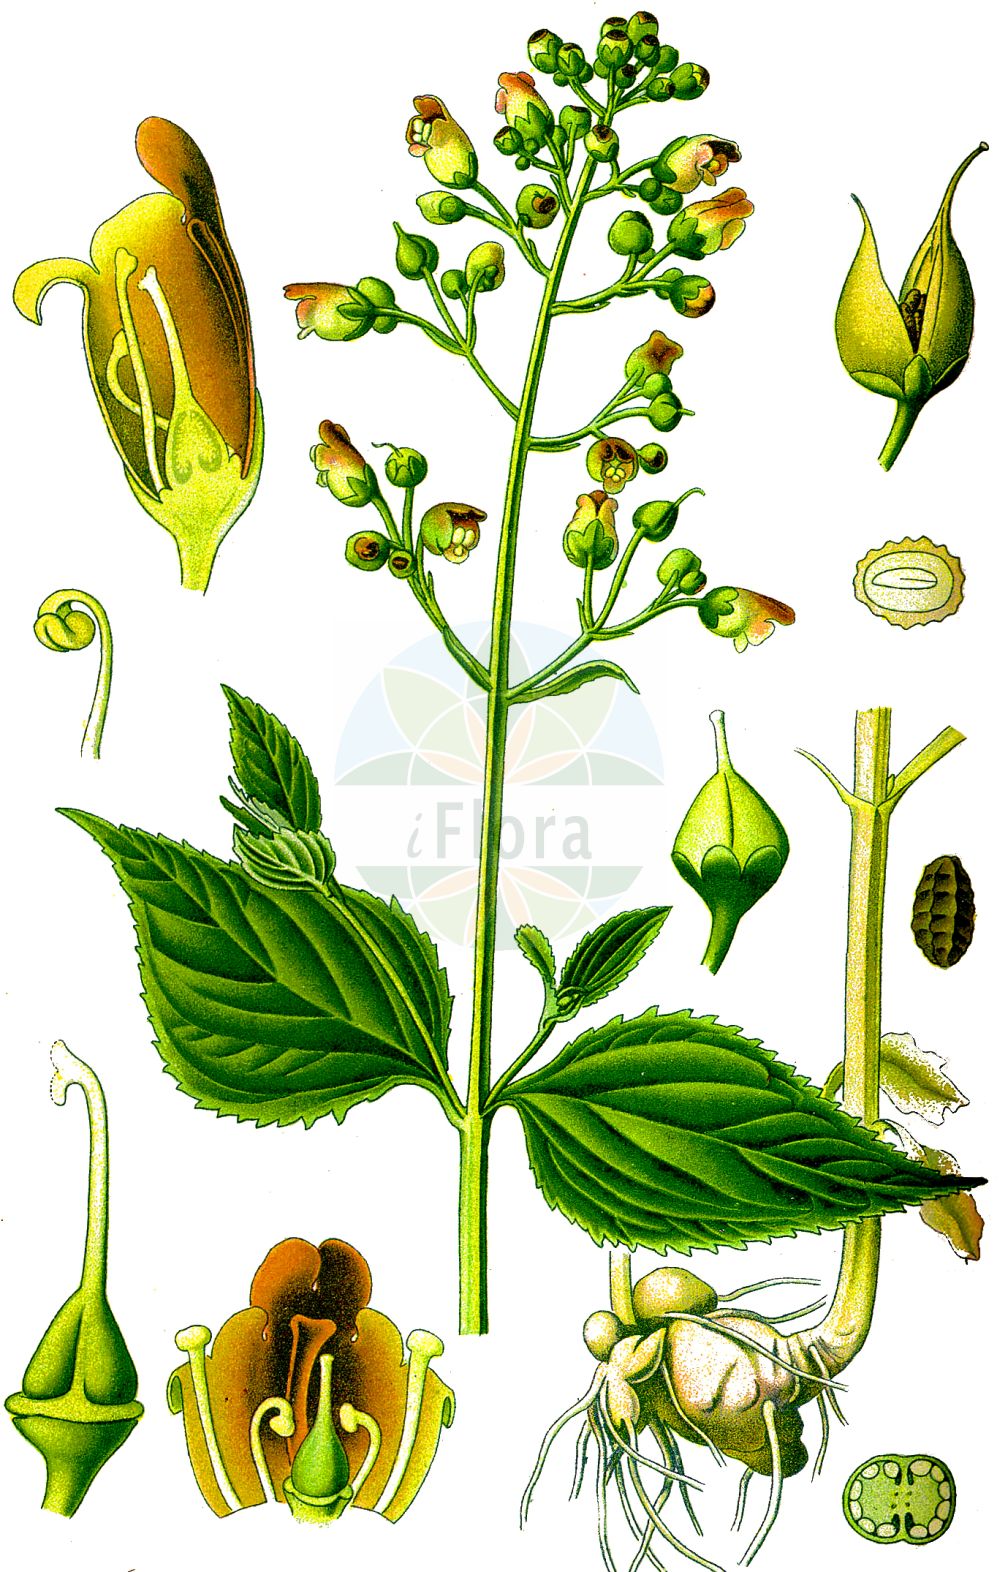 Historische Abbildung von Scrophularia nodosa (Knotige Braunwurz - Common Figwort). Das Bild zeigt Blatt, Bluete, Frucht und Same. ---- Historical Drawing of Scrophularia nodosa (Knotige Braunwurz - Common Figwort). The image is showing leaf, flower, fruit and seed.(Scrophularia nodosa,Knotige Braunwurz,Common Figwort,Scrophularia nodosa,Scrophularia nodosa L. subsp.,Scrophularia nodosa subsp. chamaeneriifolia,Knotige Braunwurz,Common Figwort,Woodland Figwort,Figwort,Kernelwort,Knotted Figwort,Scrophularia,Braunwurz,Figwort,Scrophulariaceae,Braunwurzgewächse,Figwort family,Blatt,Bluete,Frucht,Same,leaf,flower,fruit,seed,Thomé (1885))